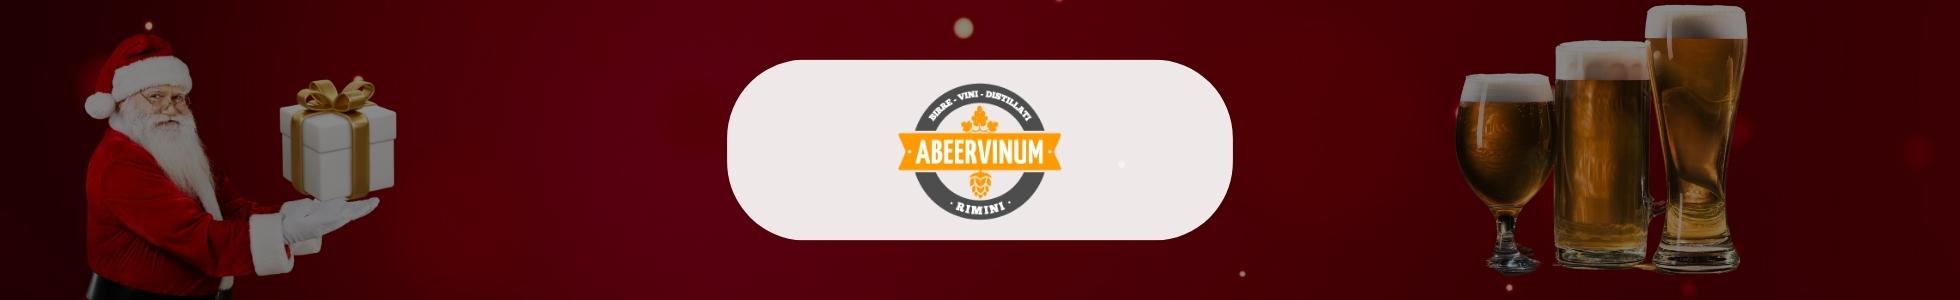 Abeervinum - Shop online bicchieri birra